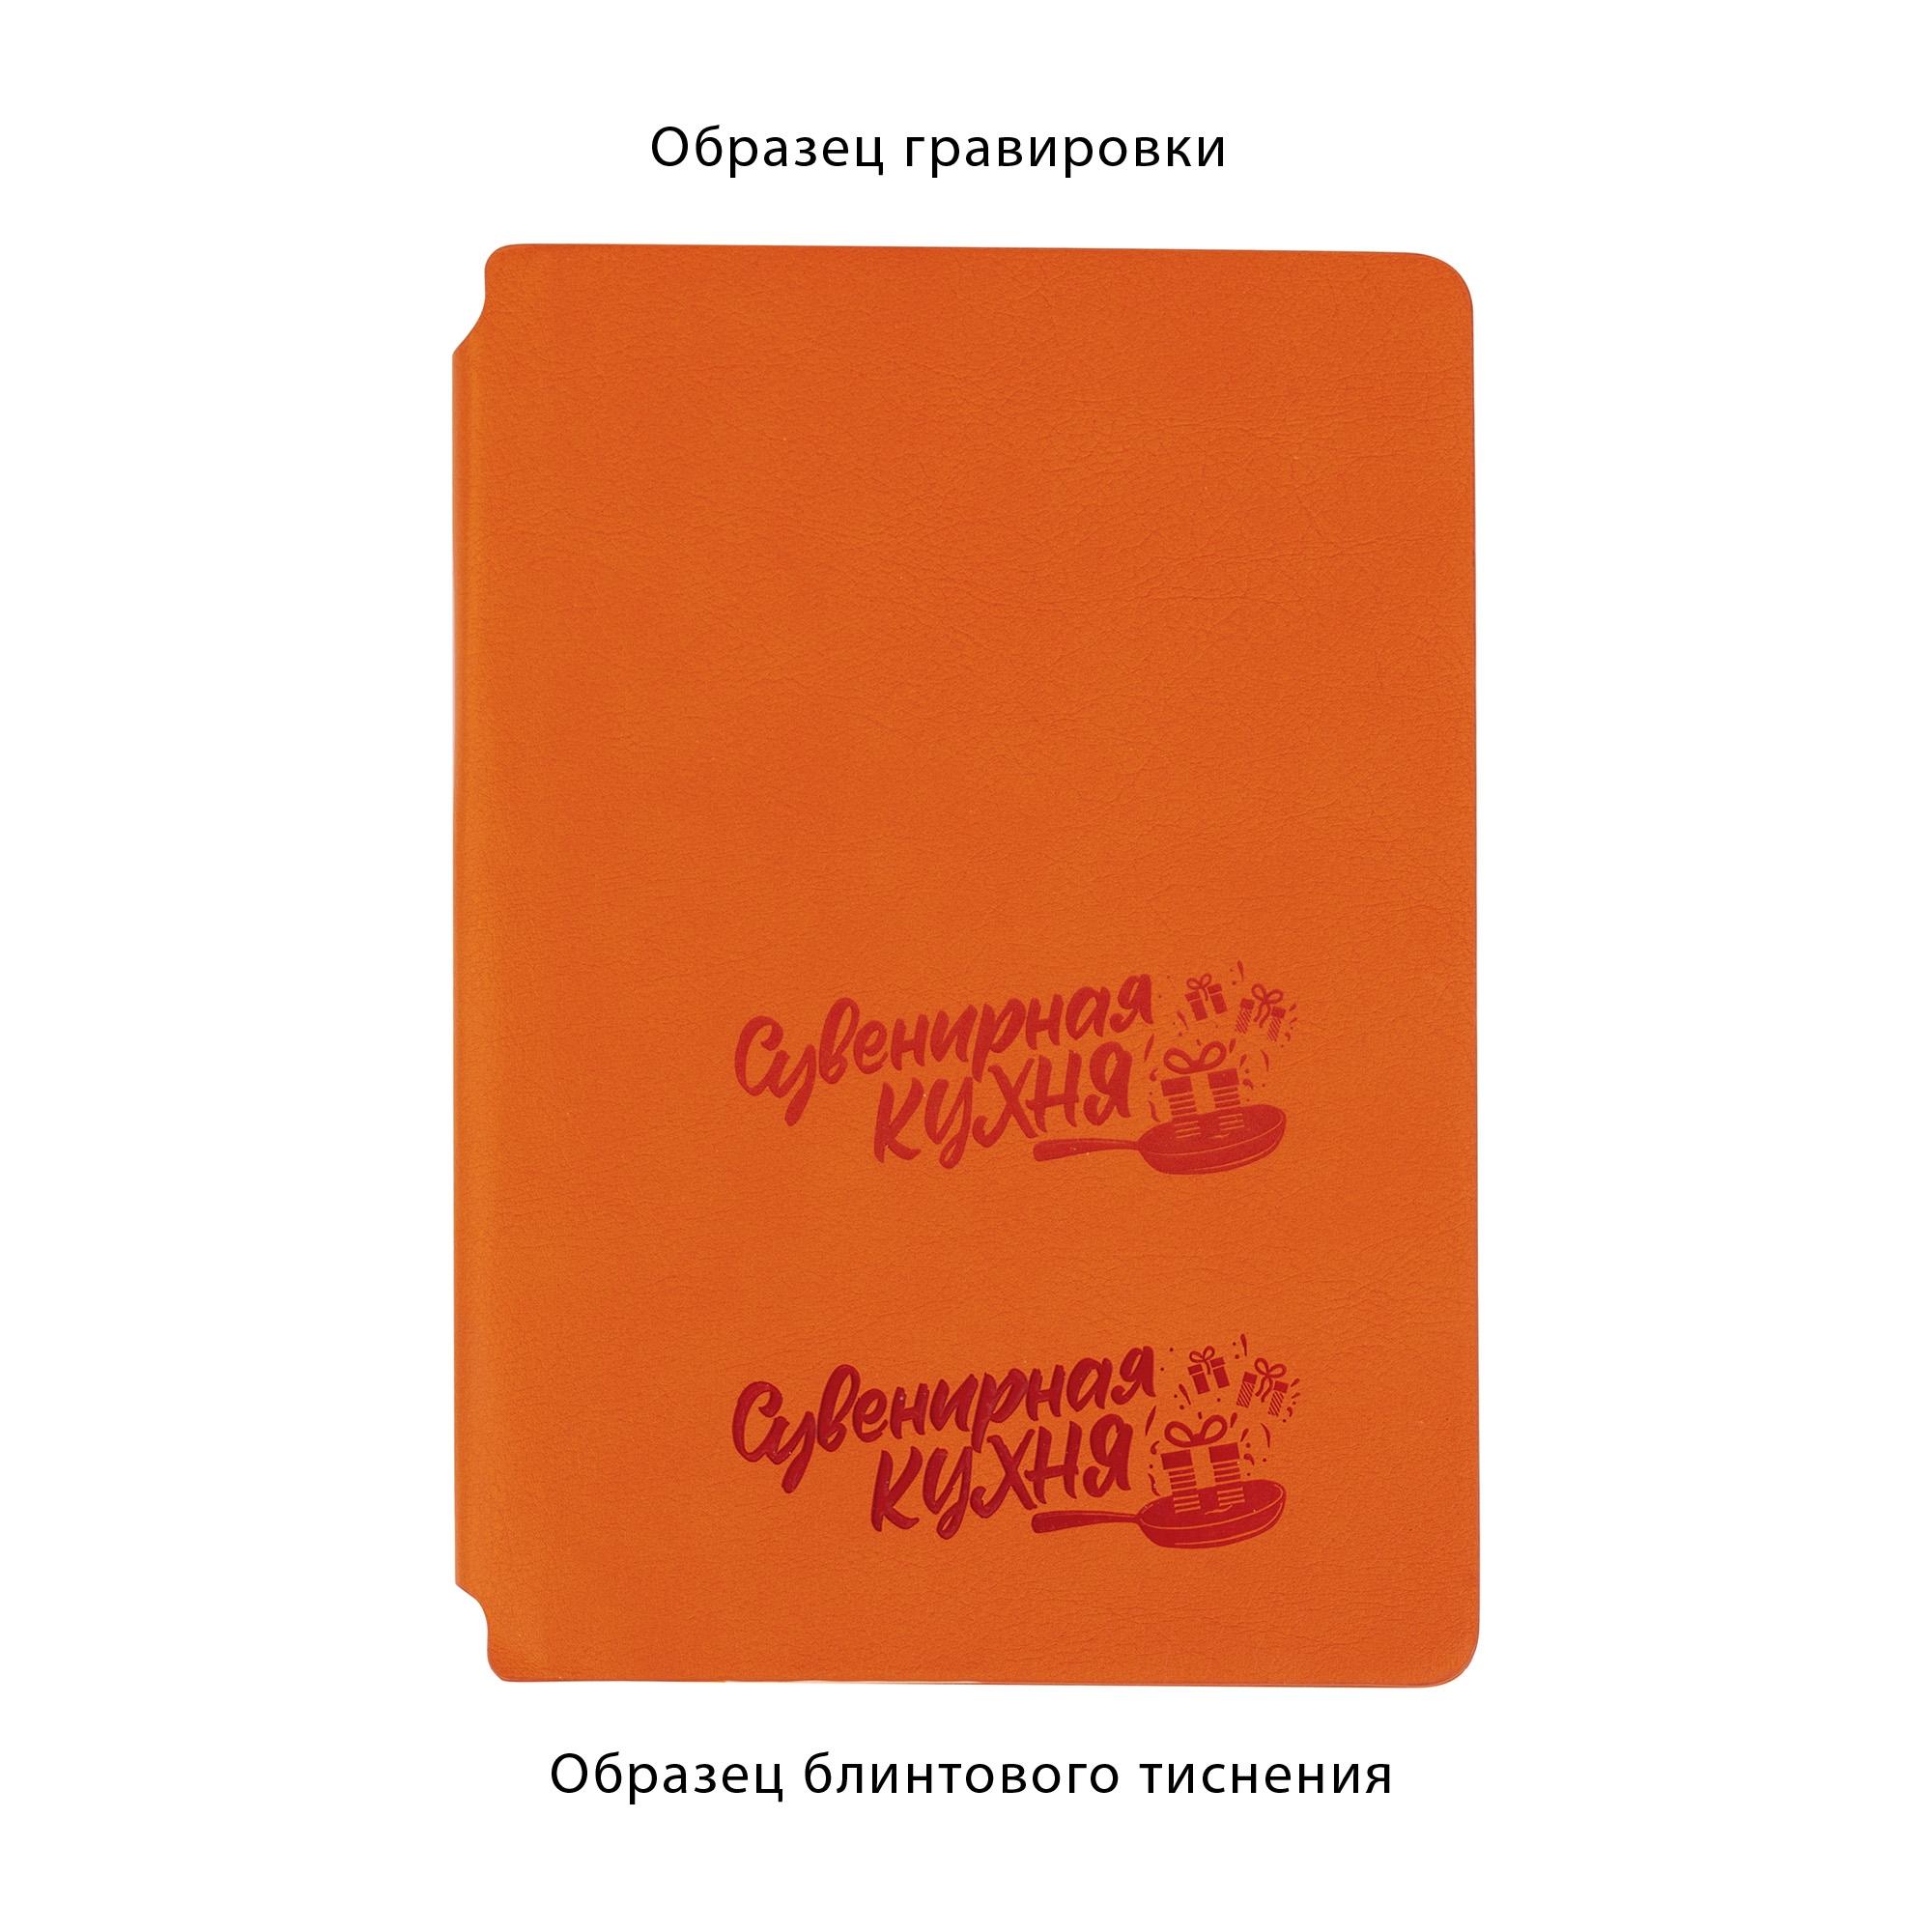 Ежедневник недатированный "Альба", формат А5, гибкая обложка, оранжевый, кожзам